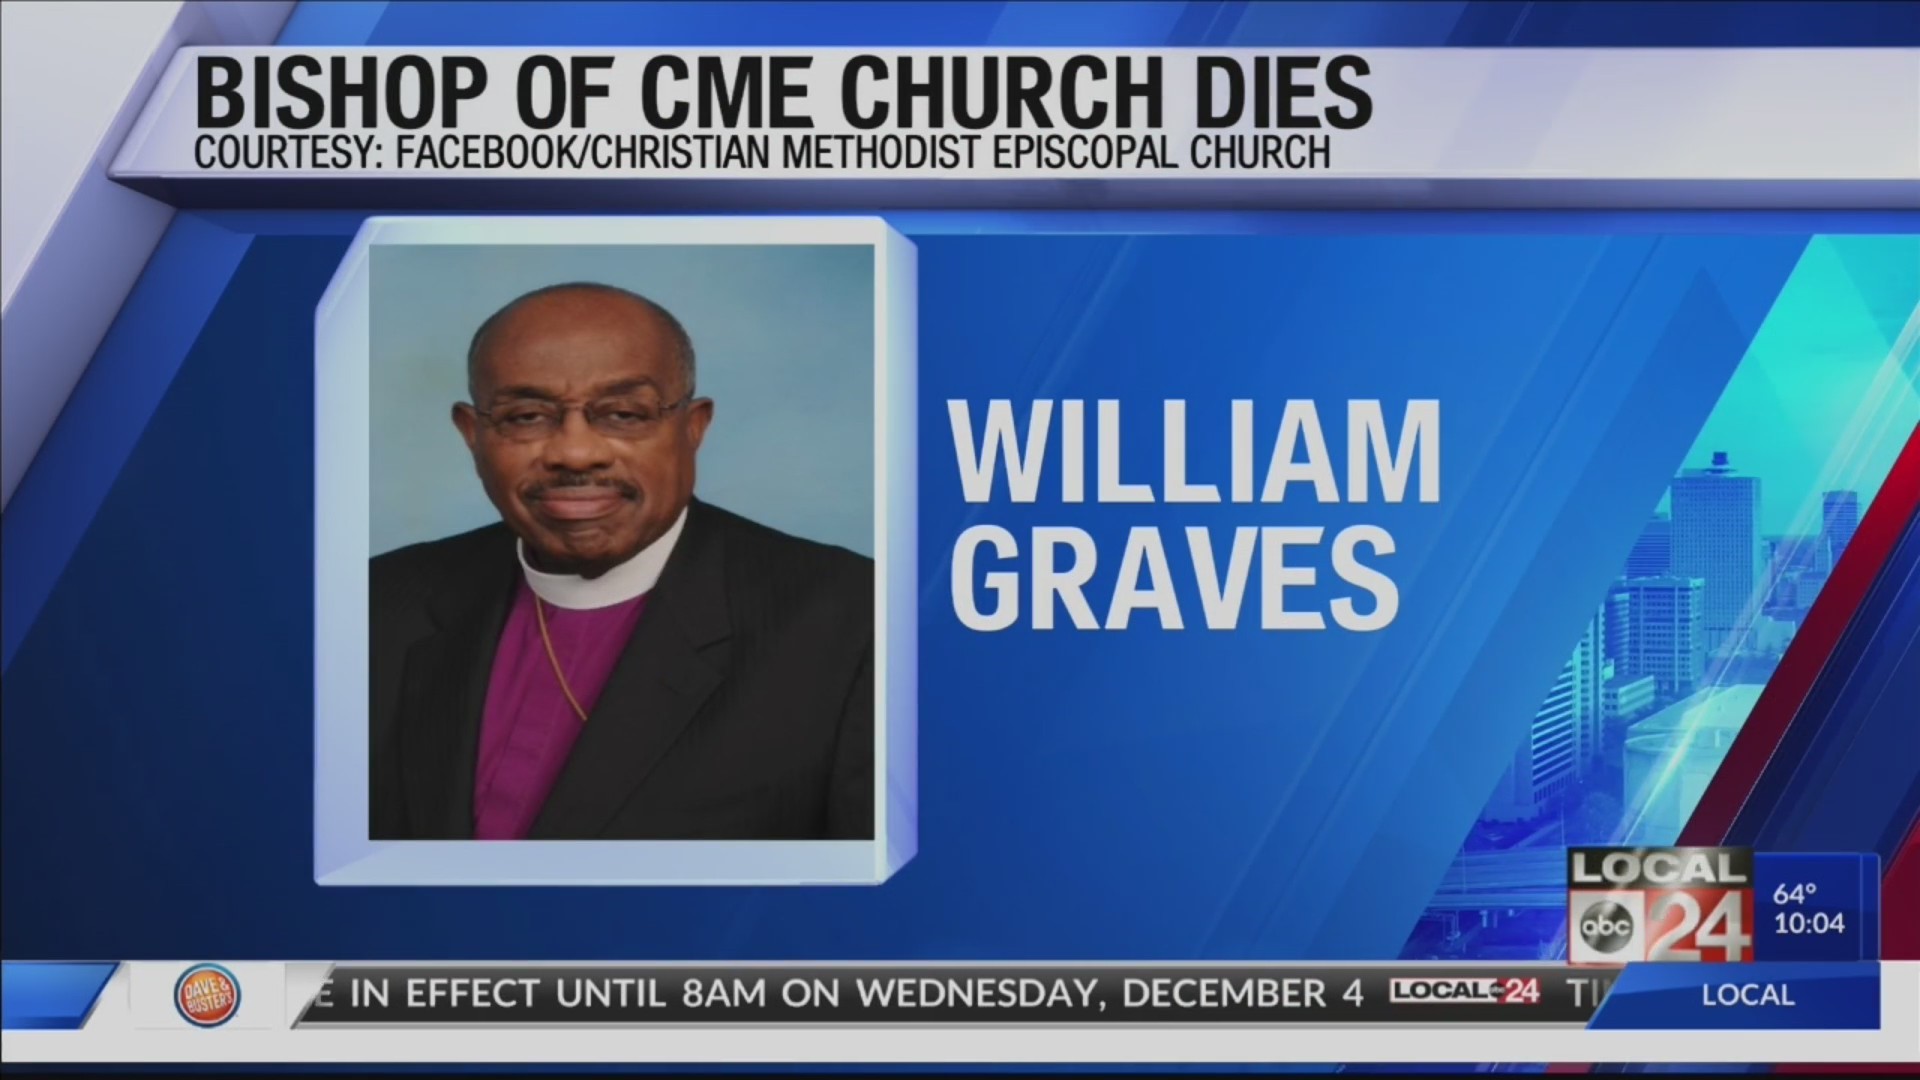 BISHOP OF CME CHURCH DIES